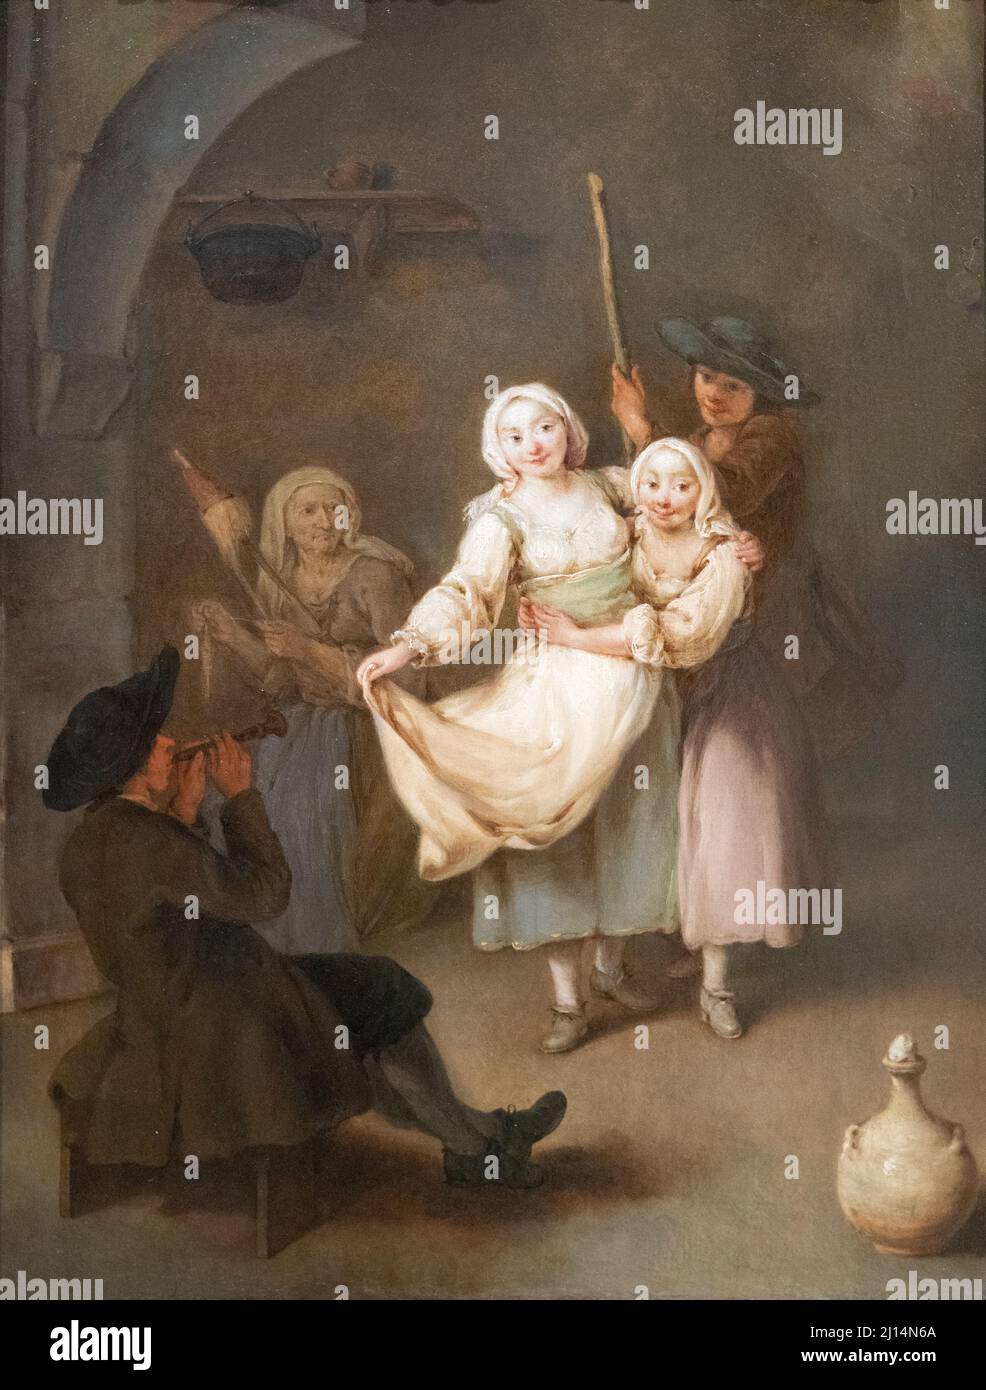 Pietro Longhi painting, 'la danse' 1750, vieux maître italien du 18th siècle, huile sur toile Banque D'Images